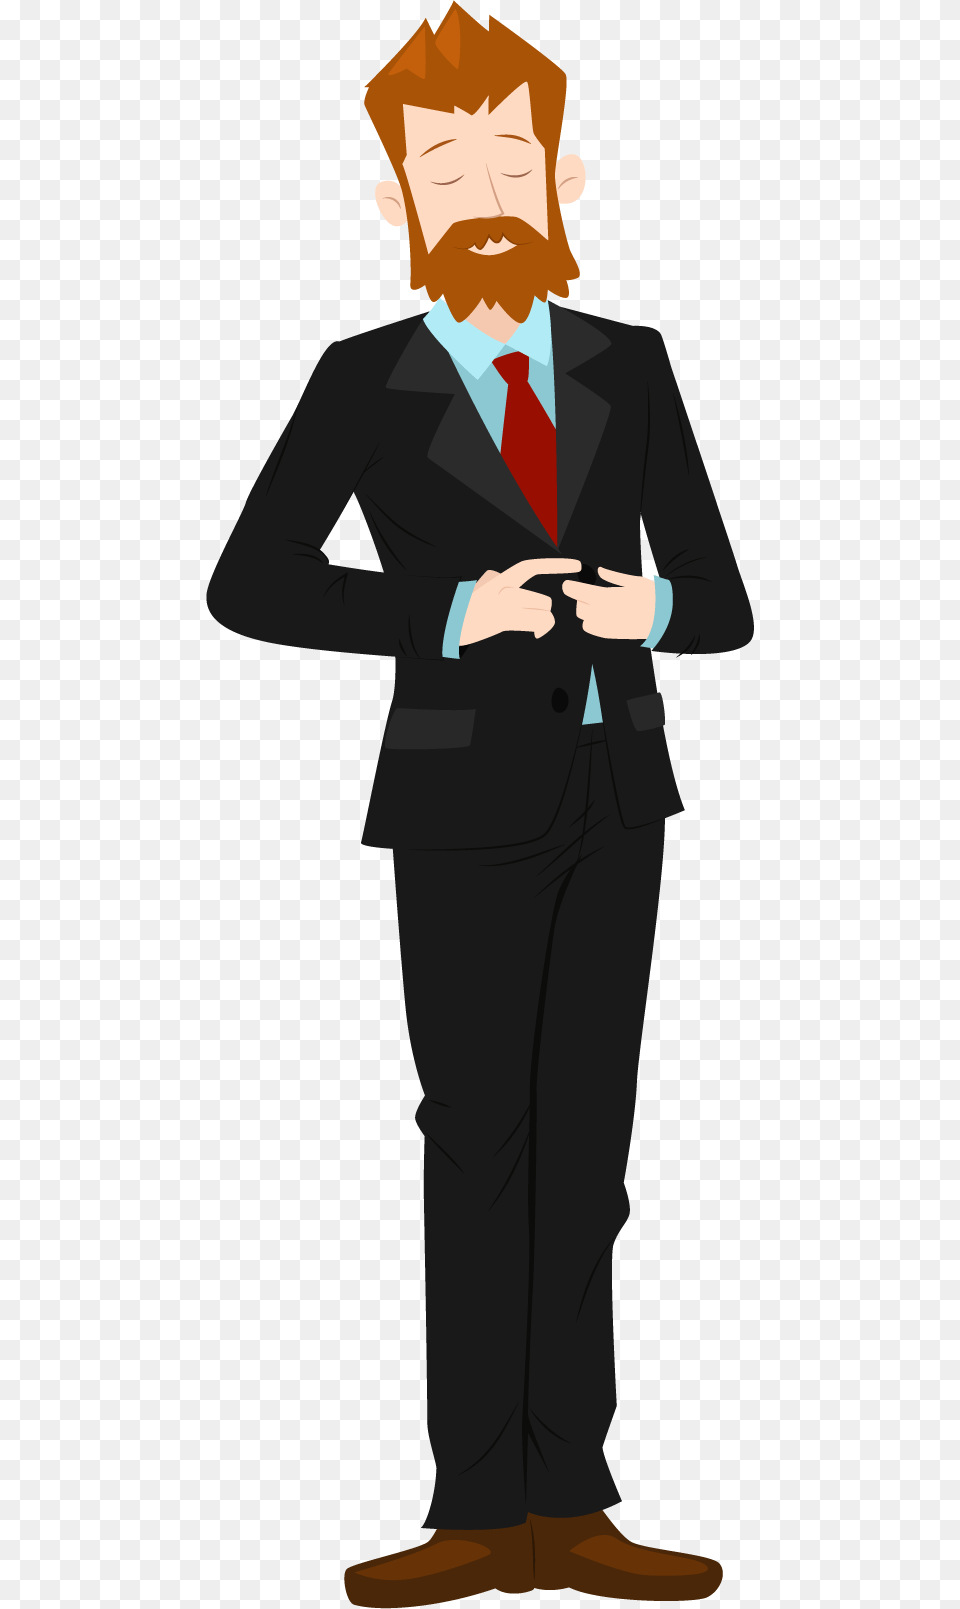 Person Clipart Transparent Background Adult Man Clipart Transparent Background, Accessories, Clothing, Tie, Suit Png Image